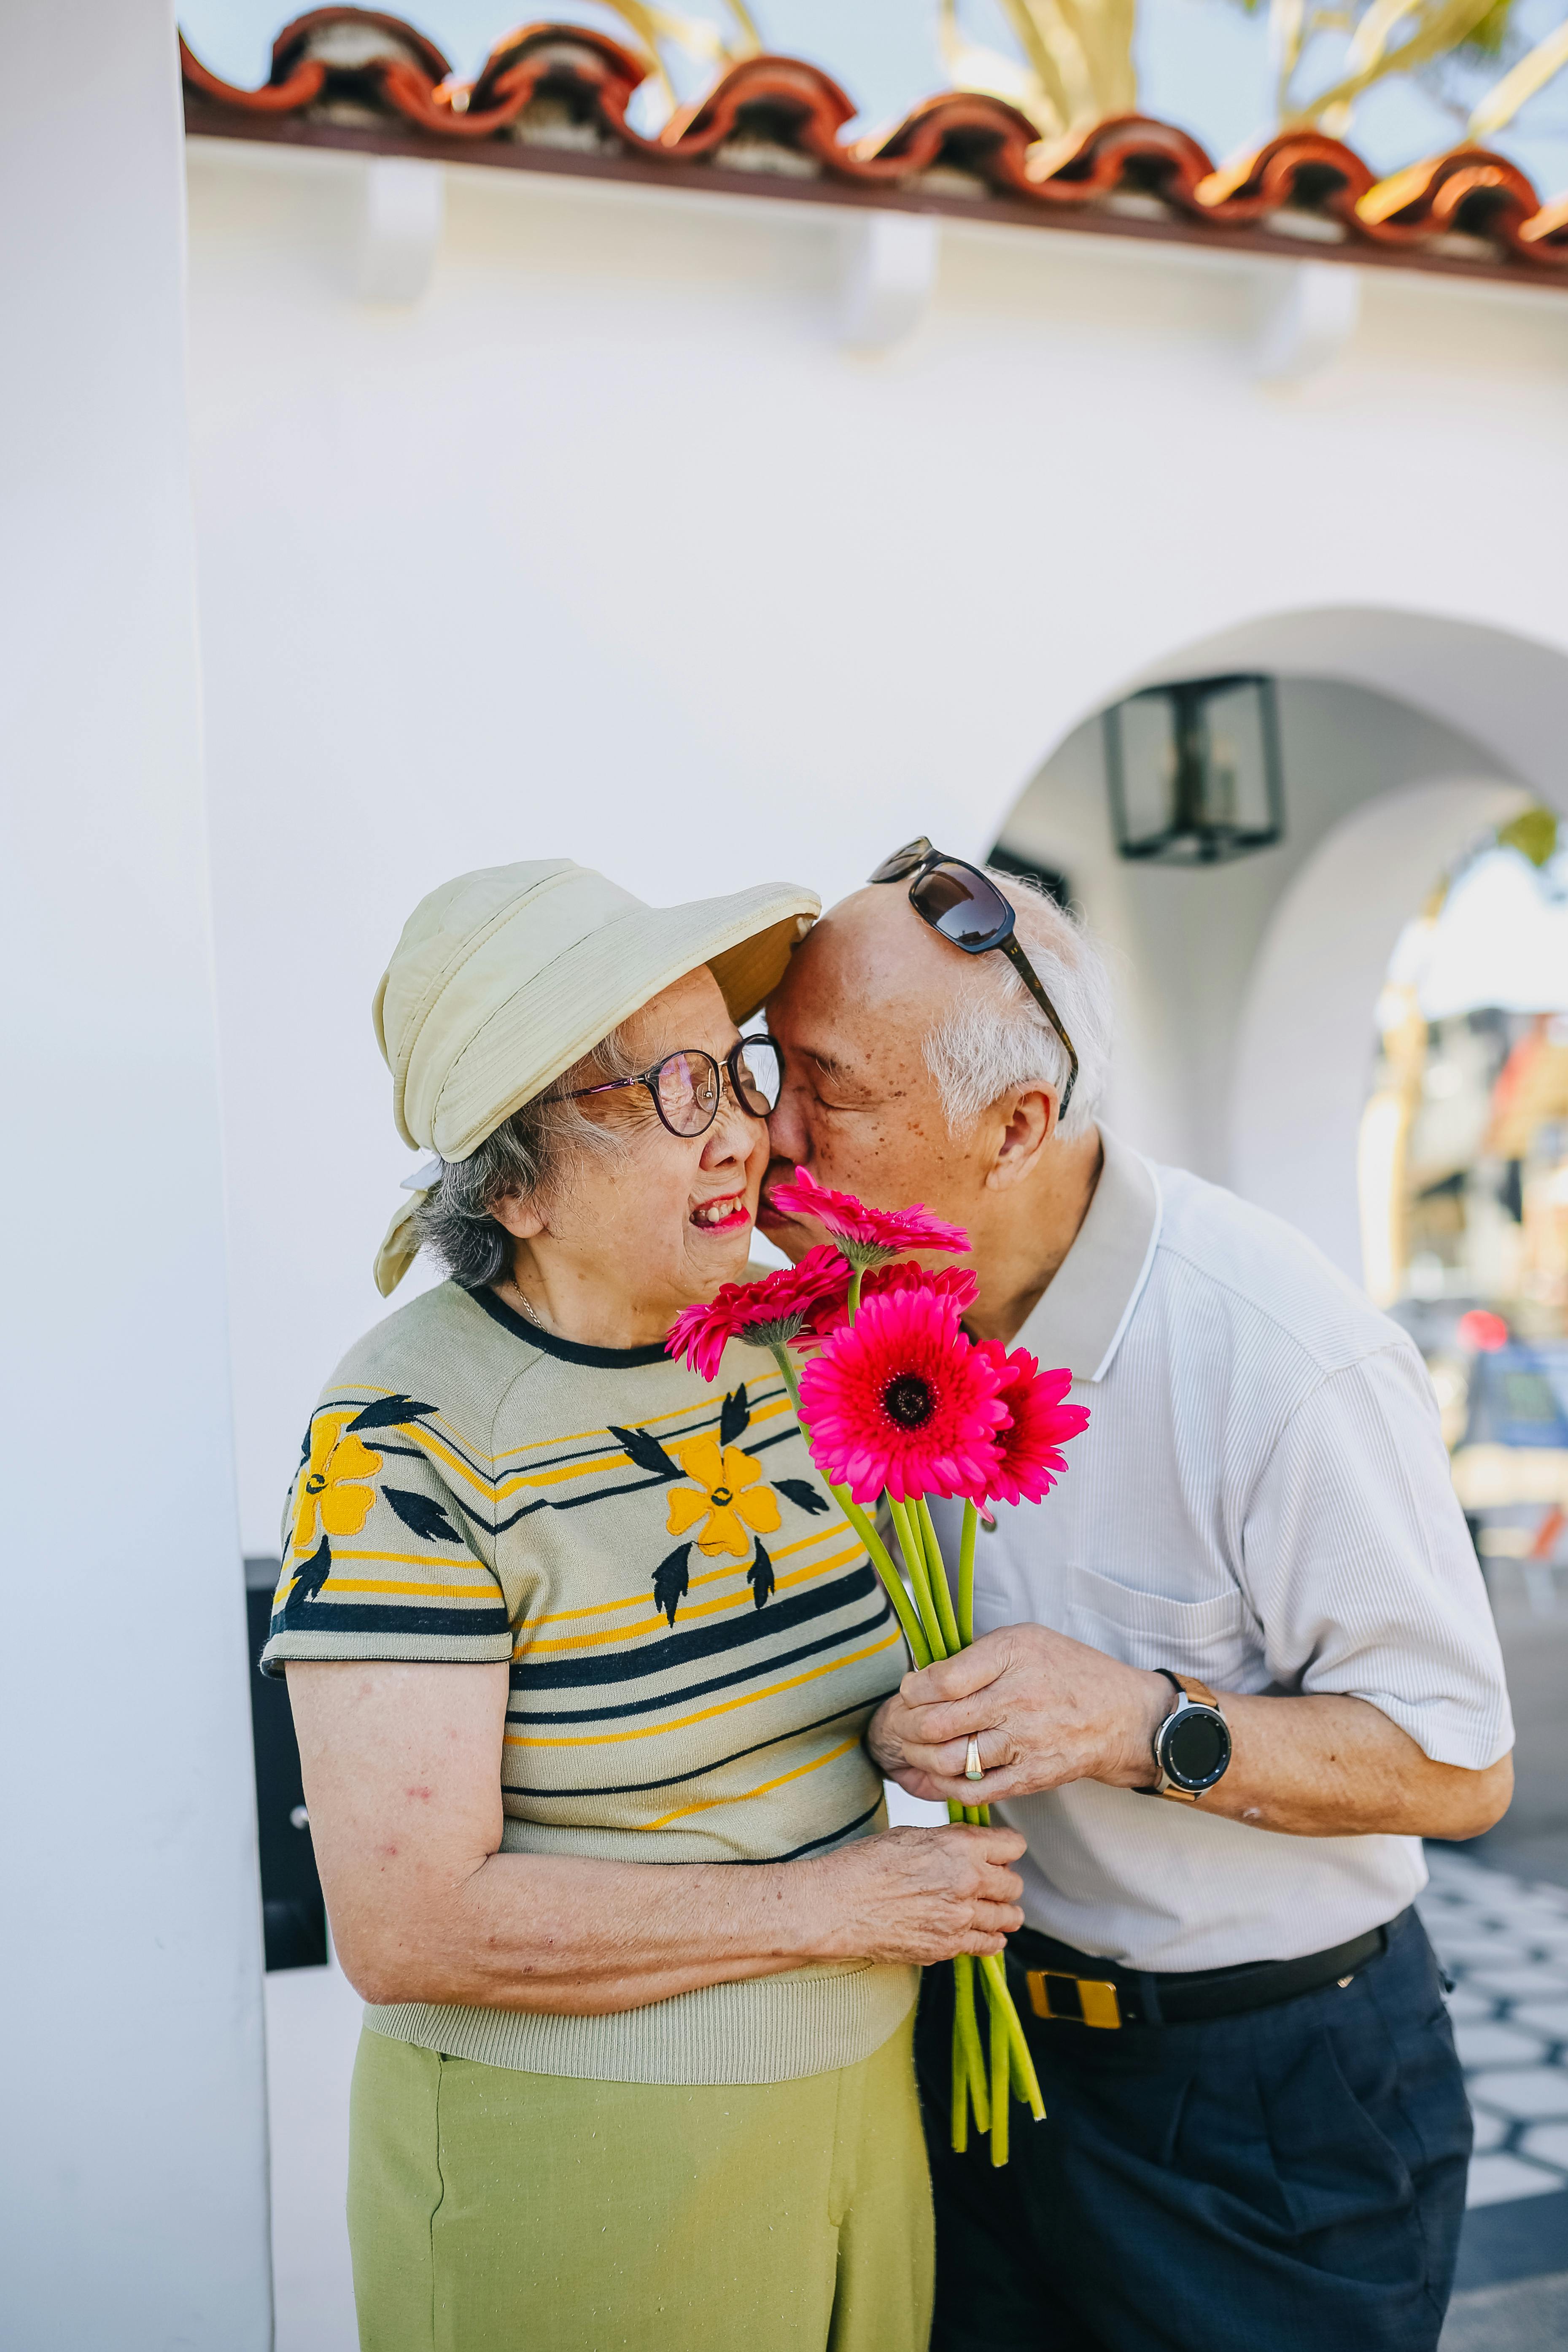 Un couple se montre romantique tandis que la femme reçoit un bouquet de fleurs | Source : Pexels